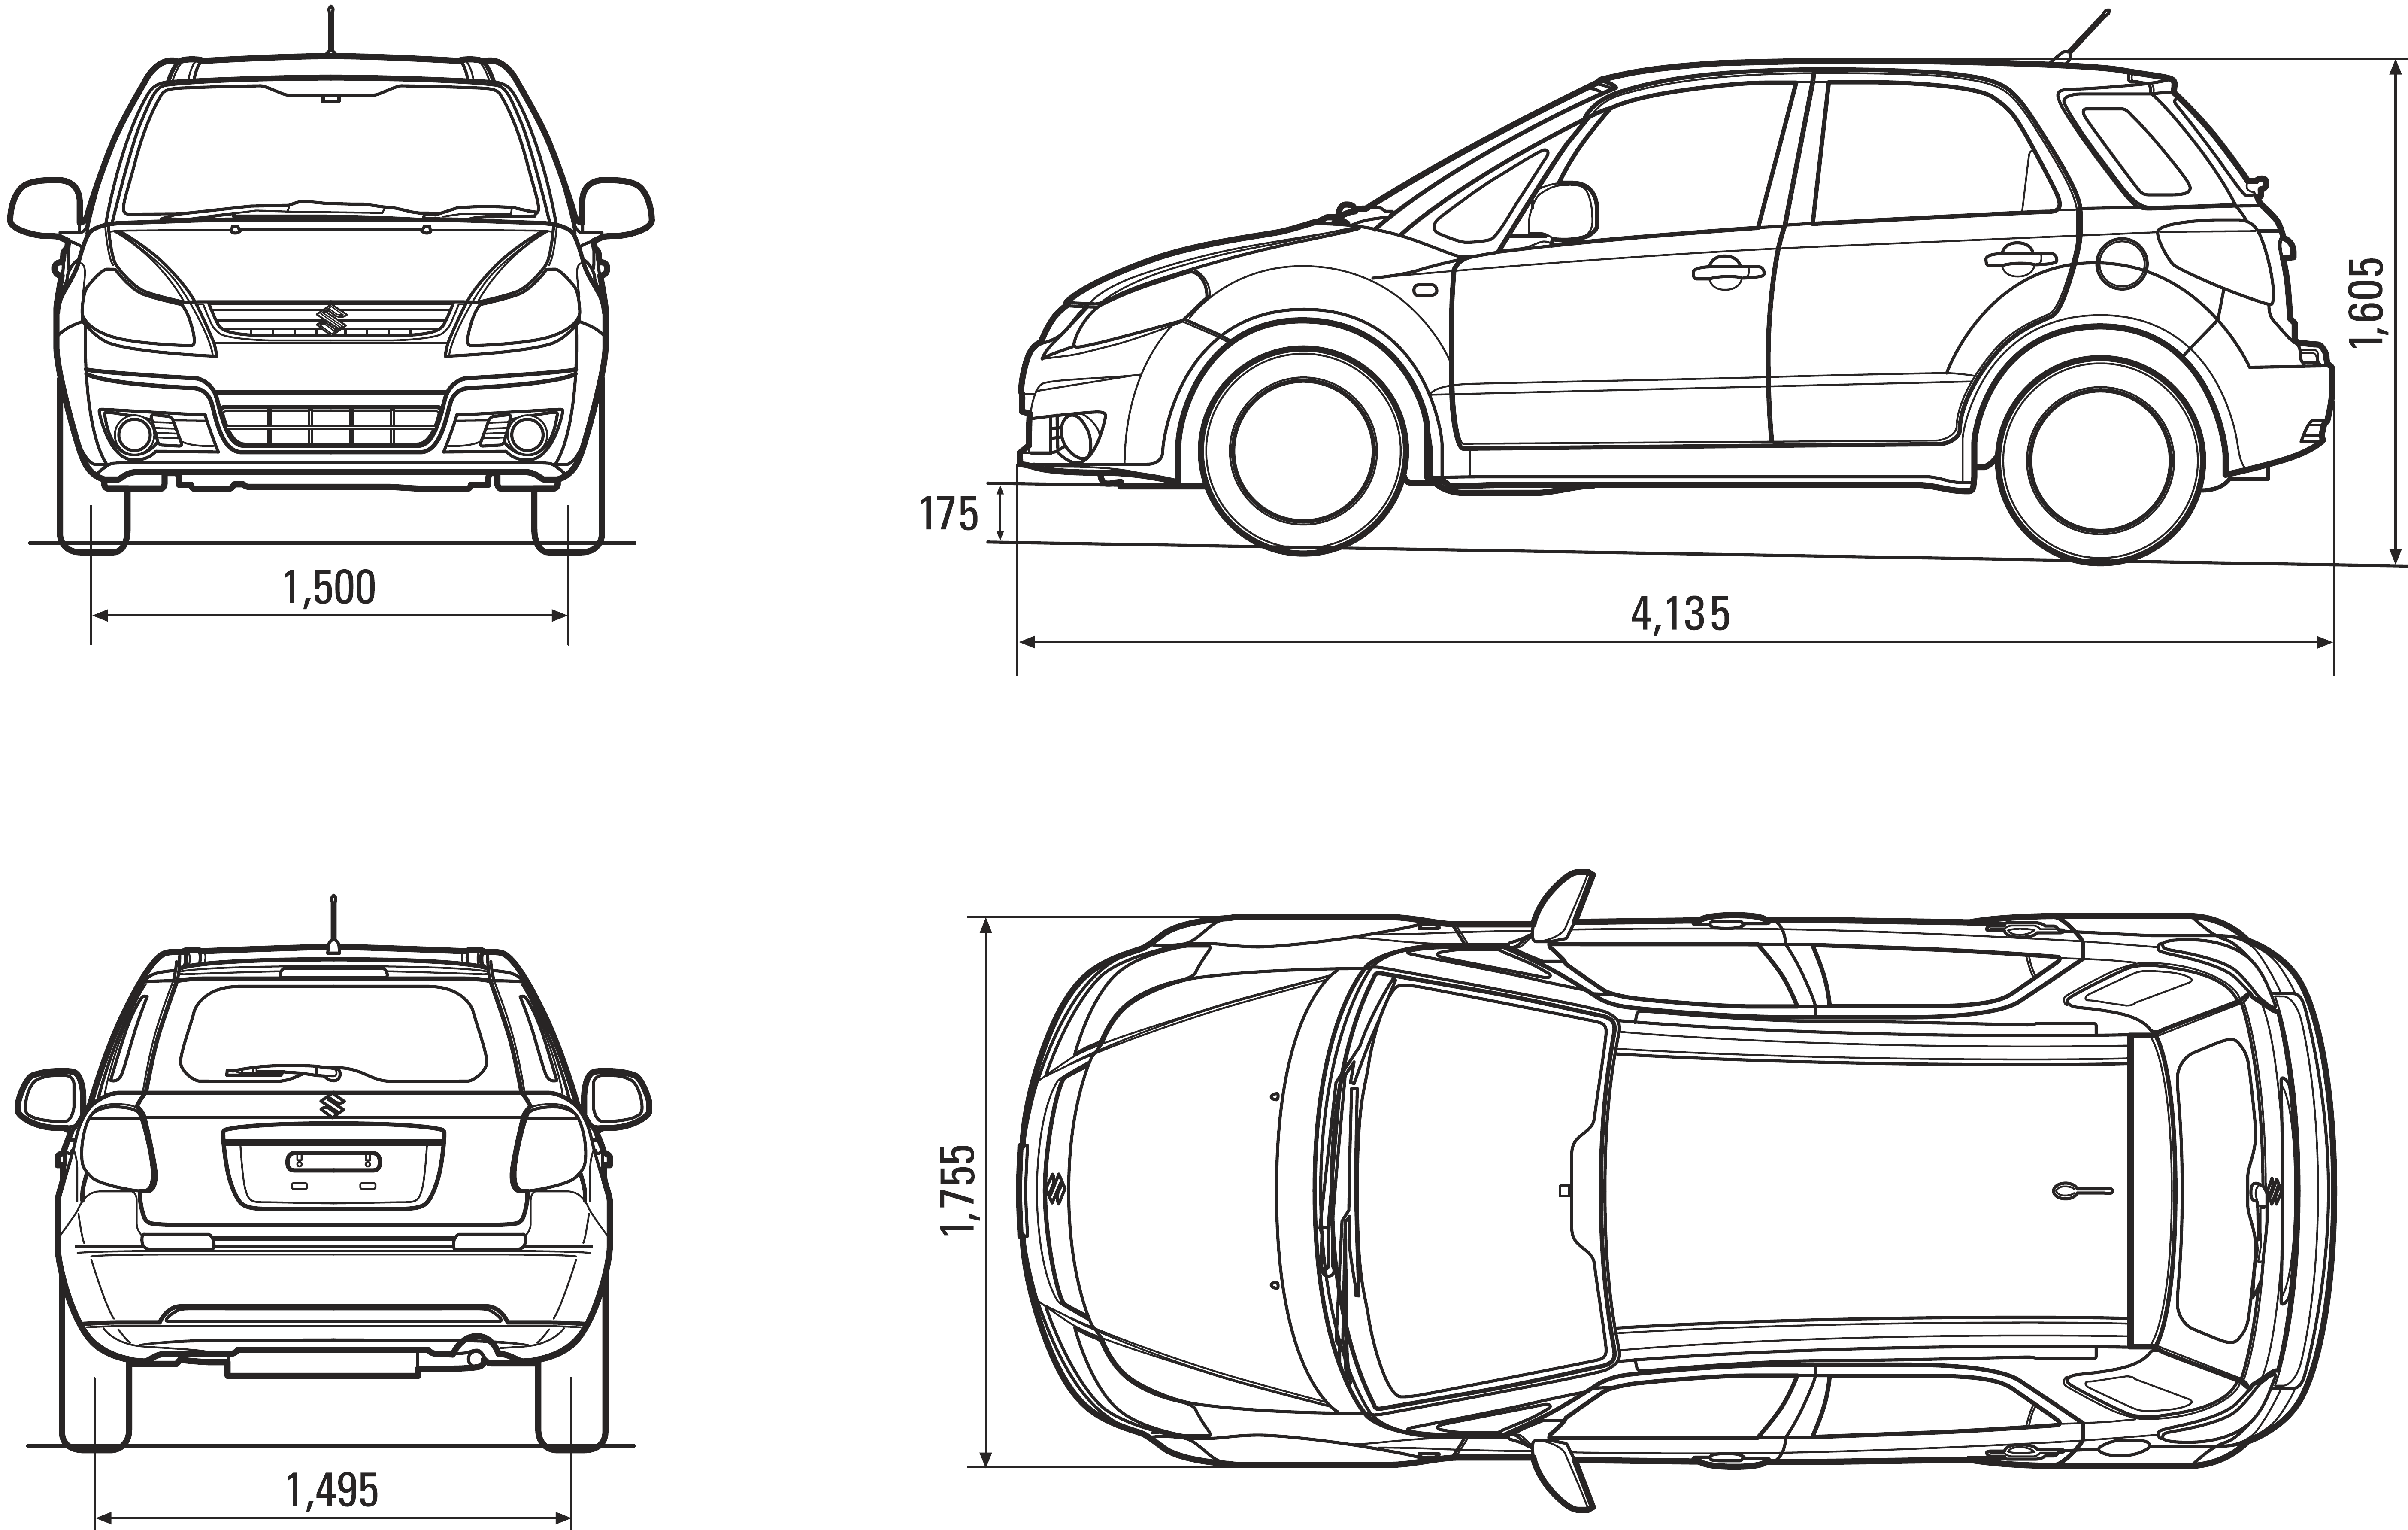 Suzuki SX4 blueprint